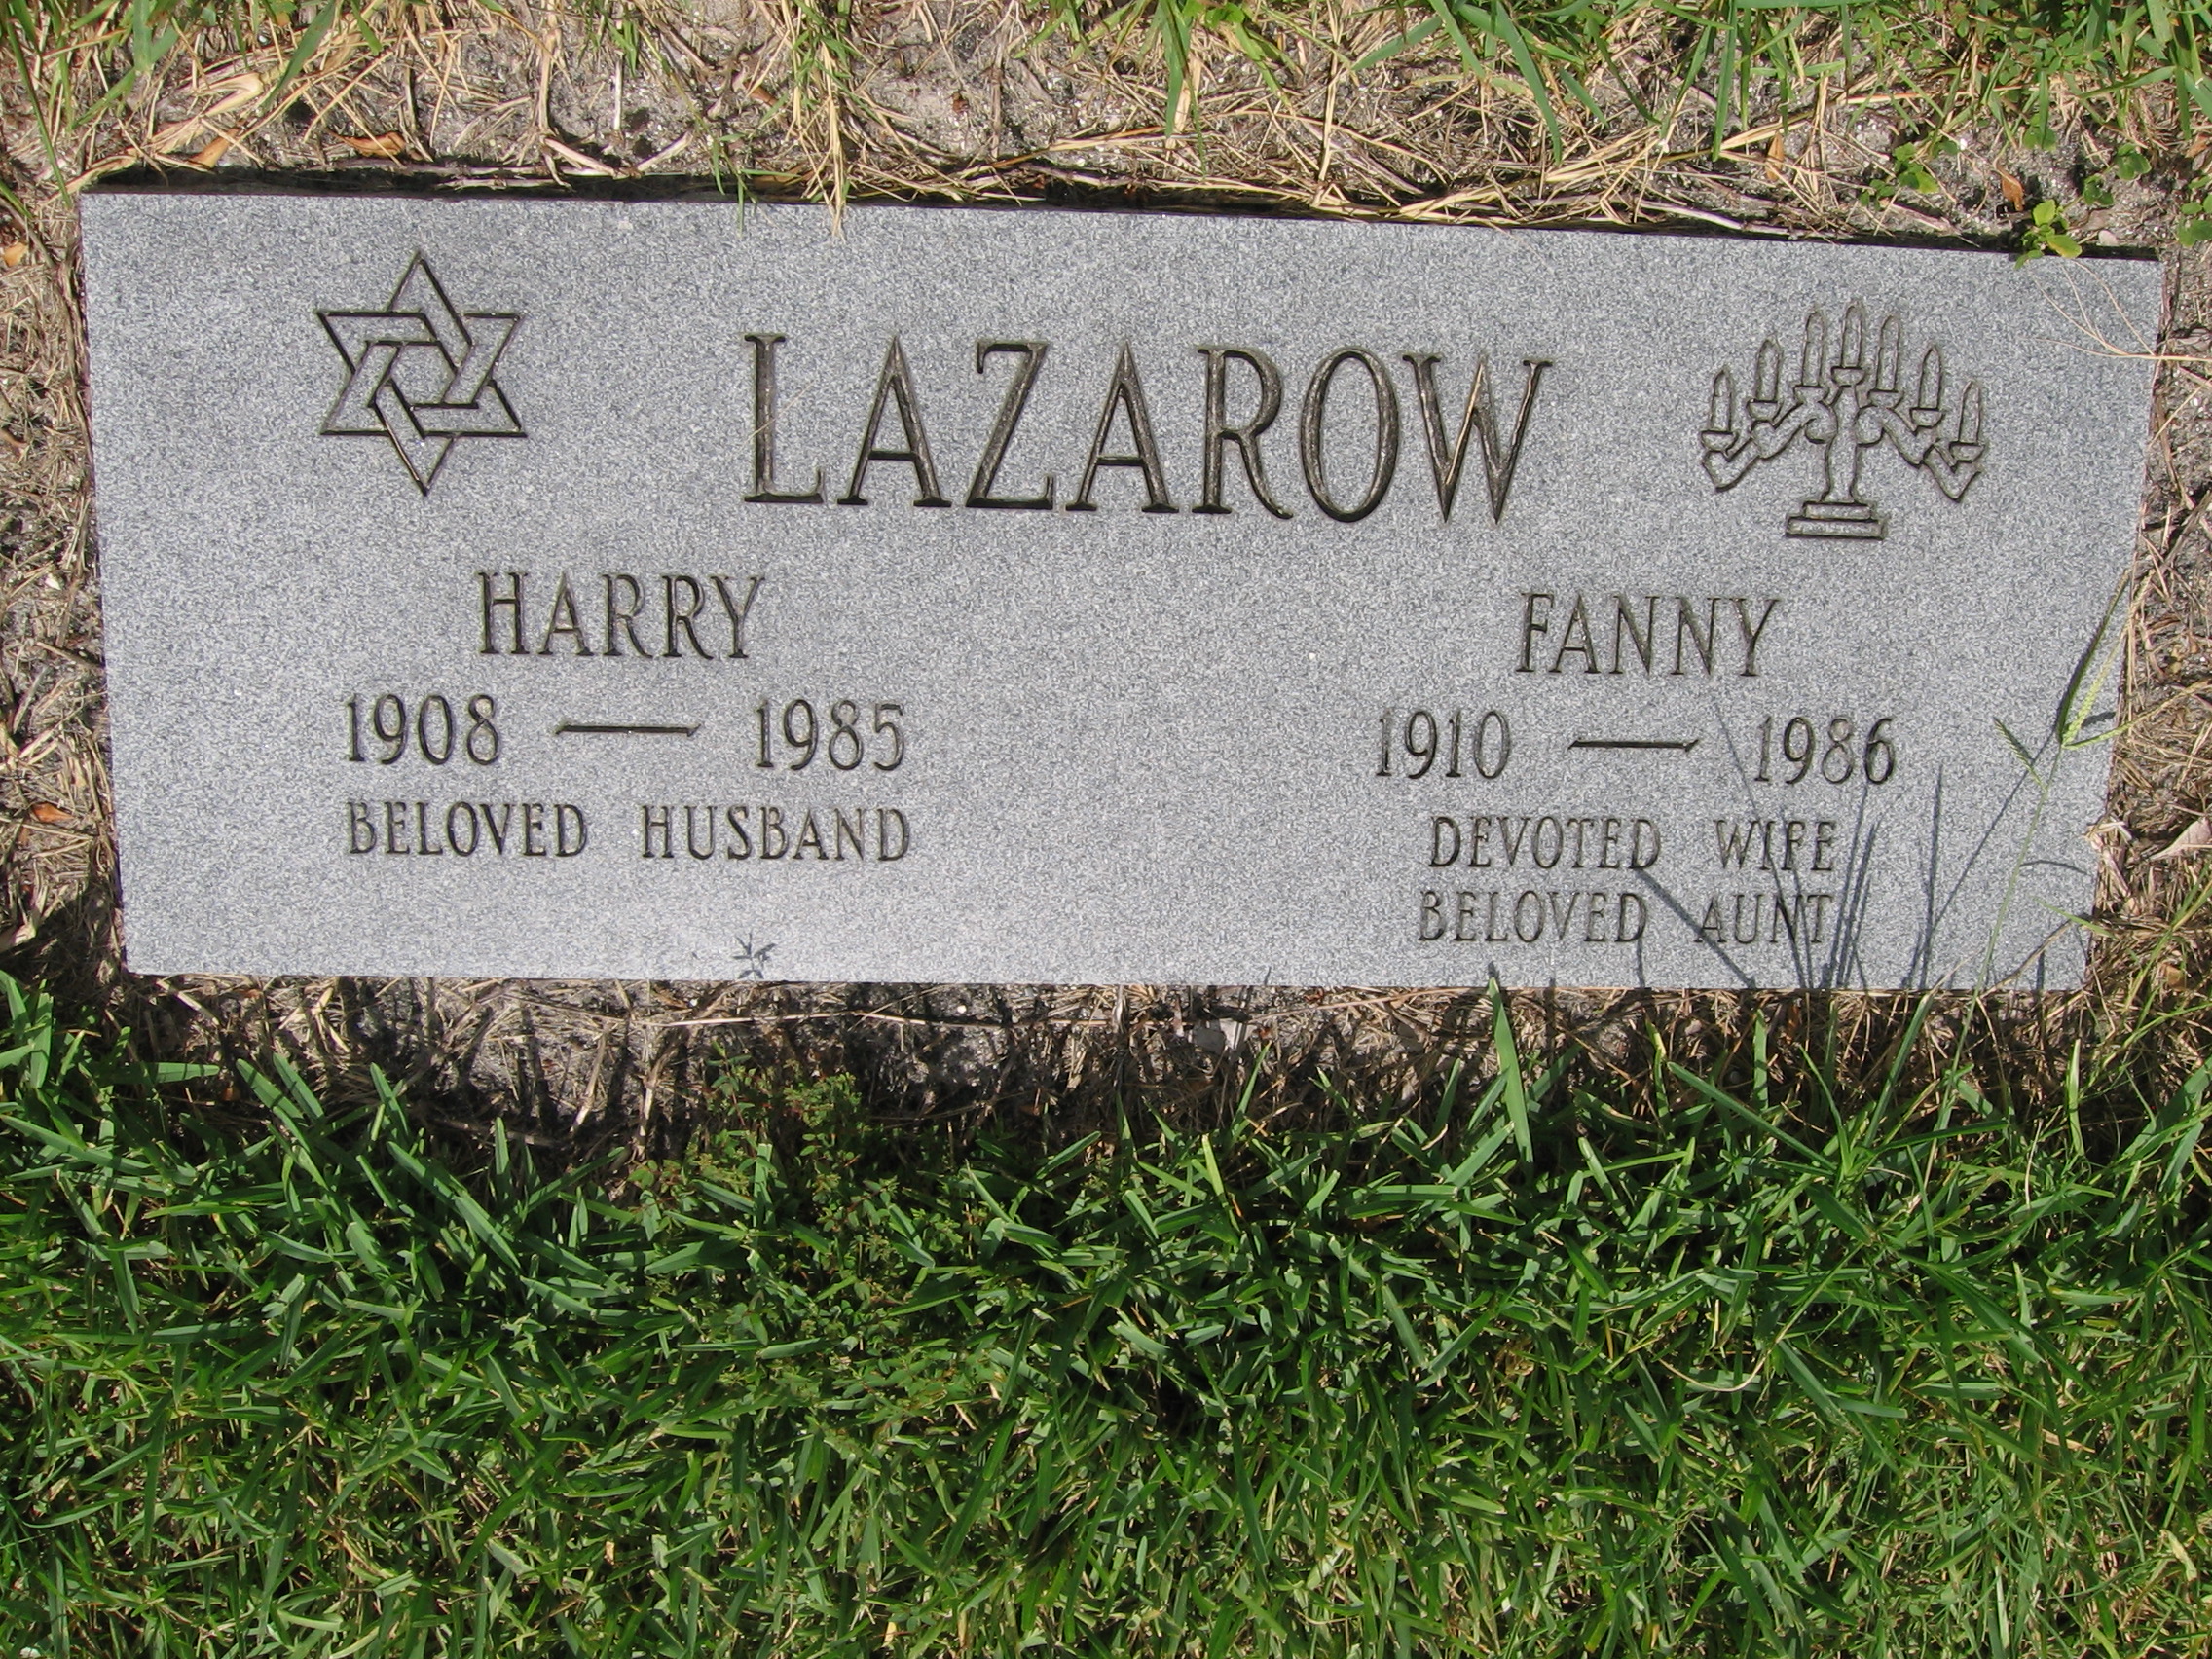 Fanny Lazarow